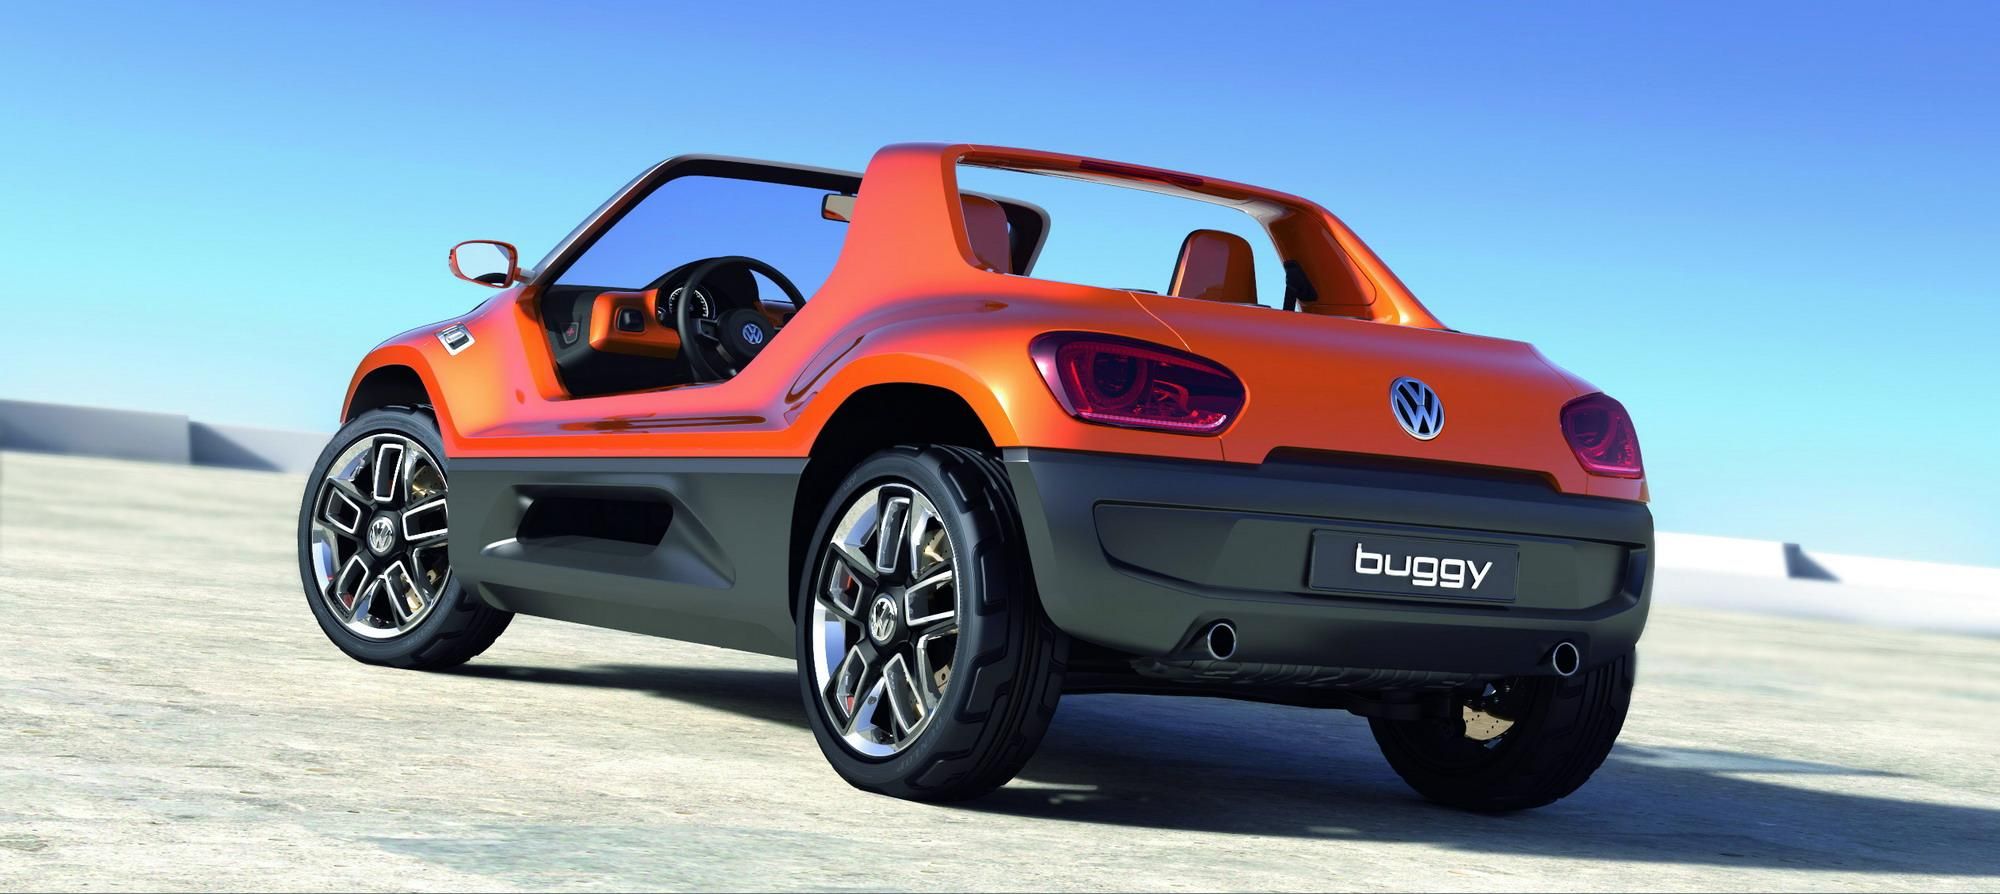 2011 Volkswagen study buggy up!